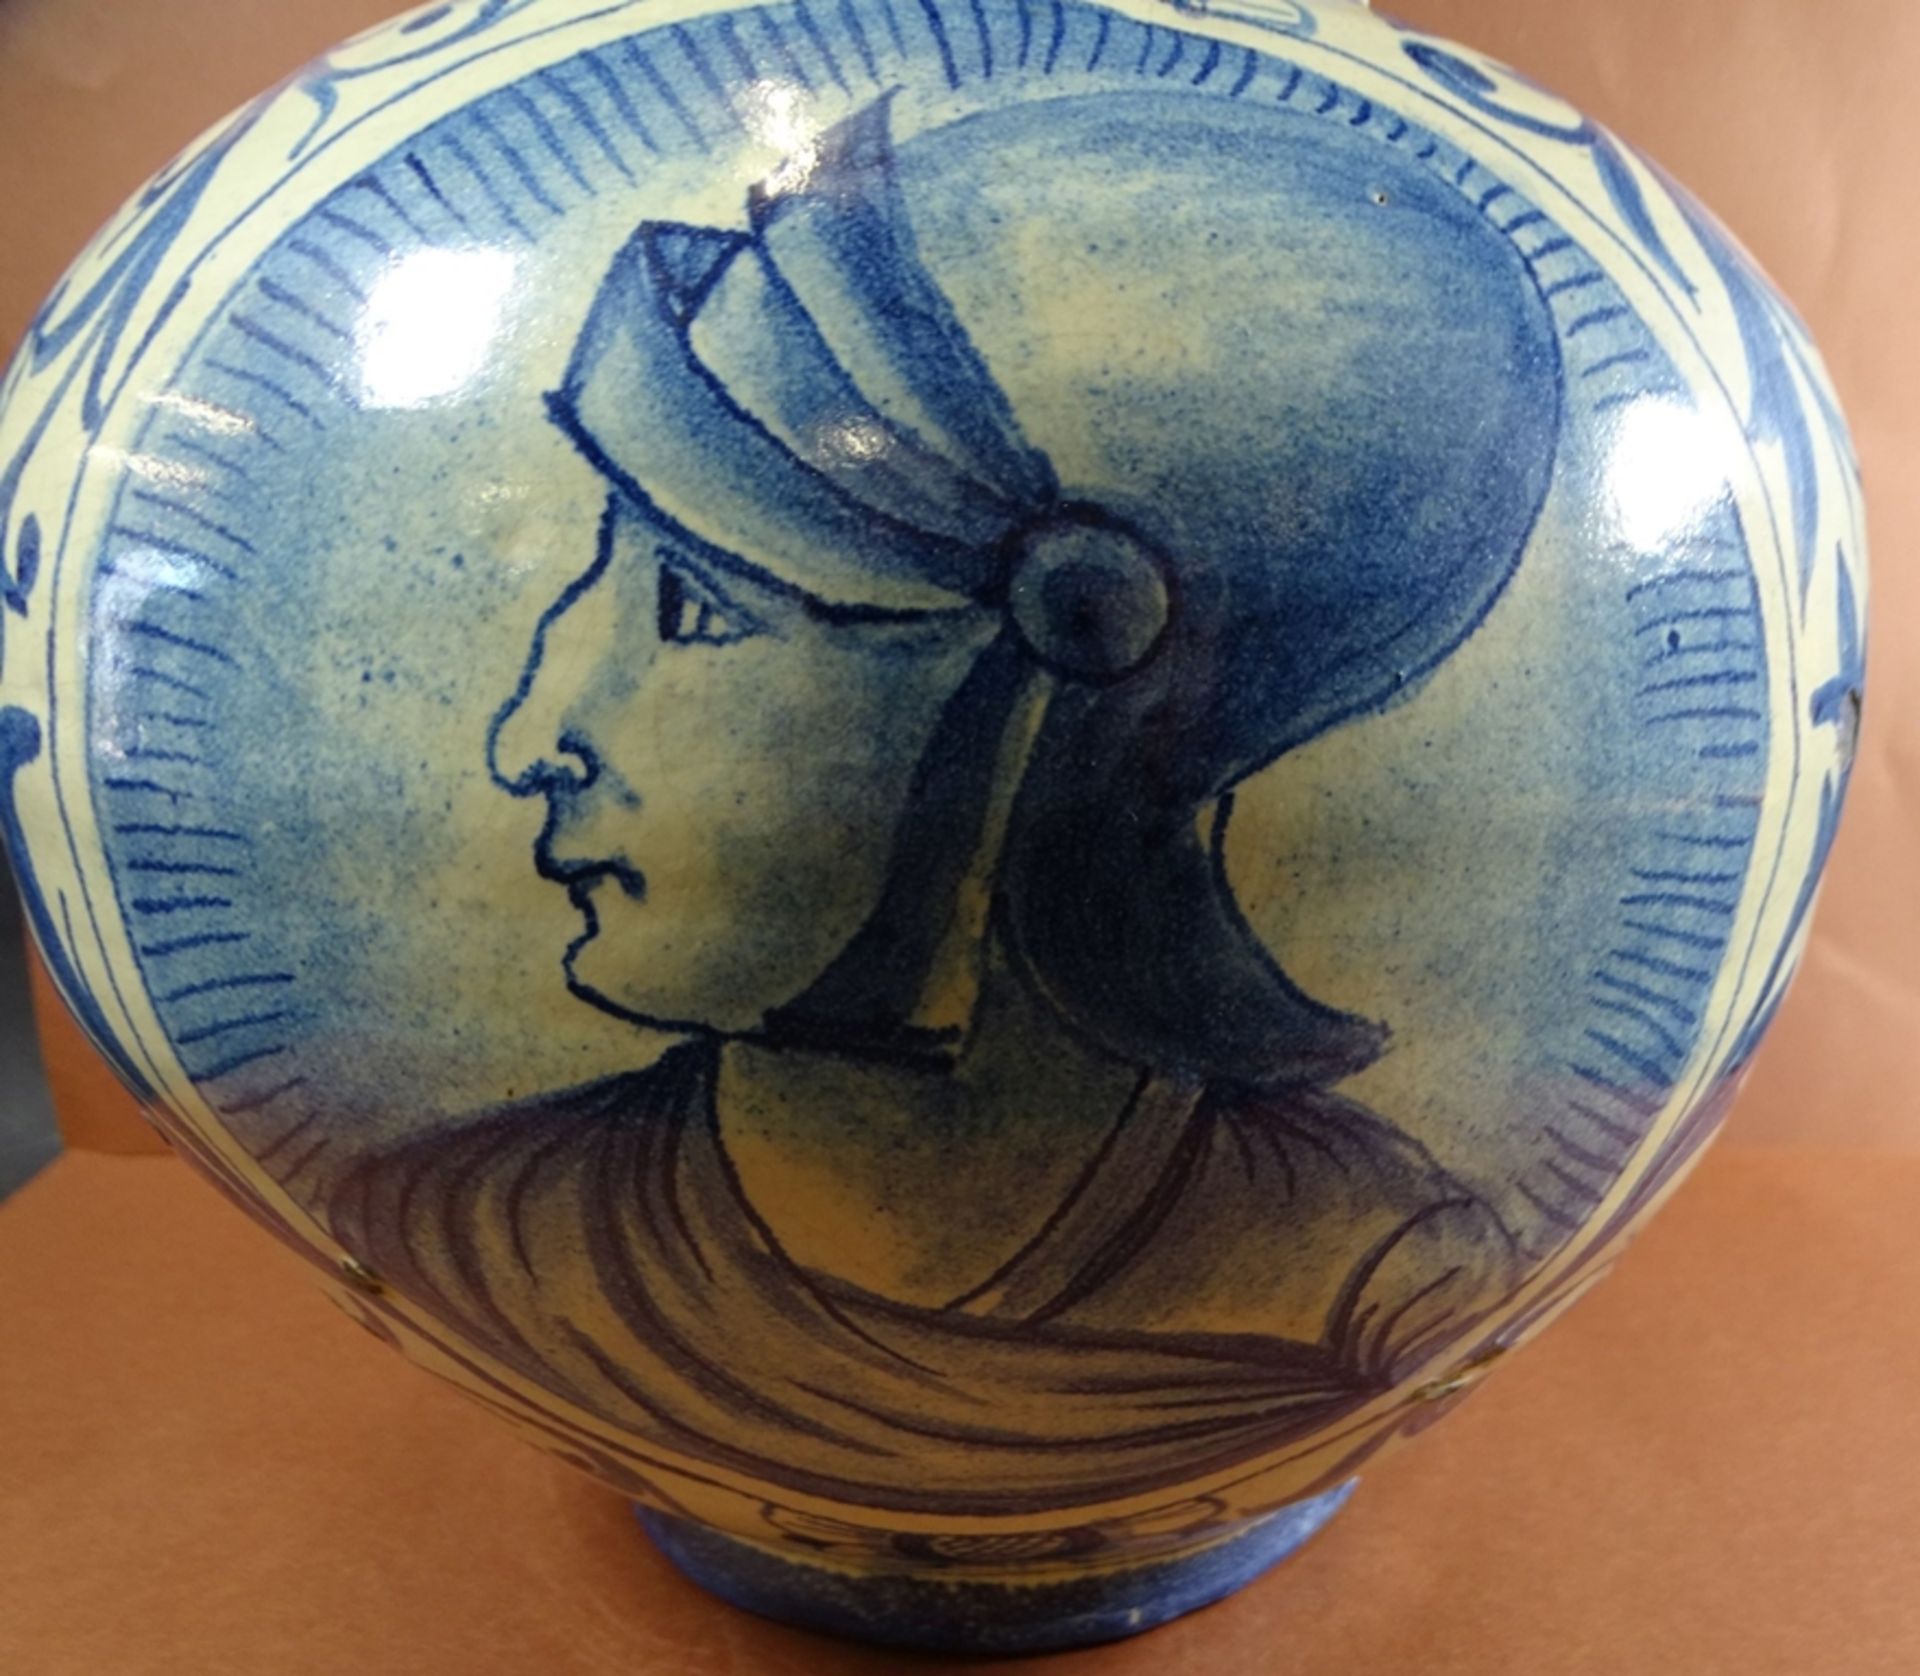 gr. Fayence-Vase mit Portrait eines Condottieri, Blaumalerei,  Alters-u. Gebrauchsspuren, einige kl - Bild 2 aus 5